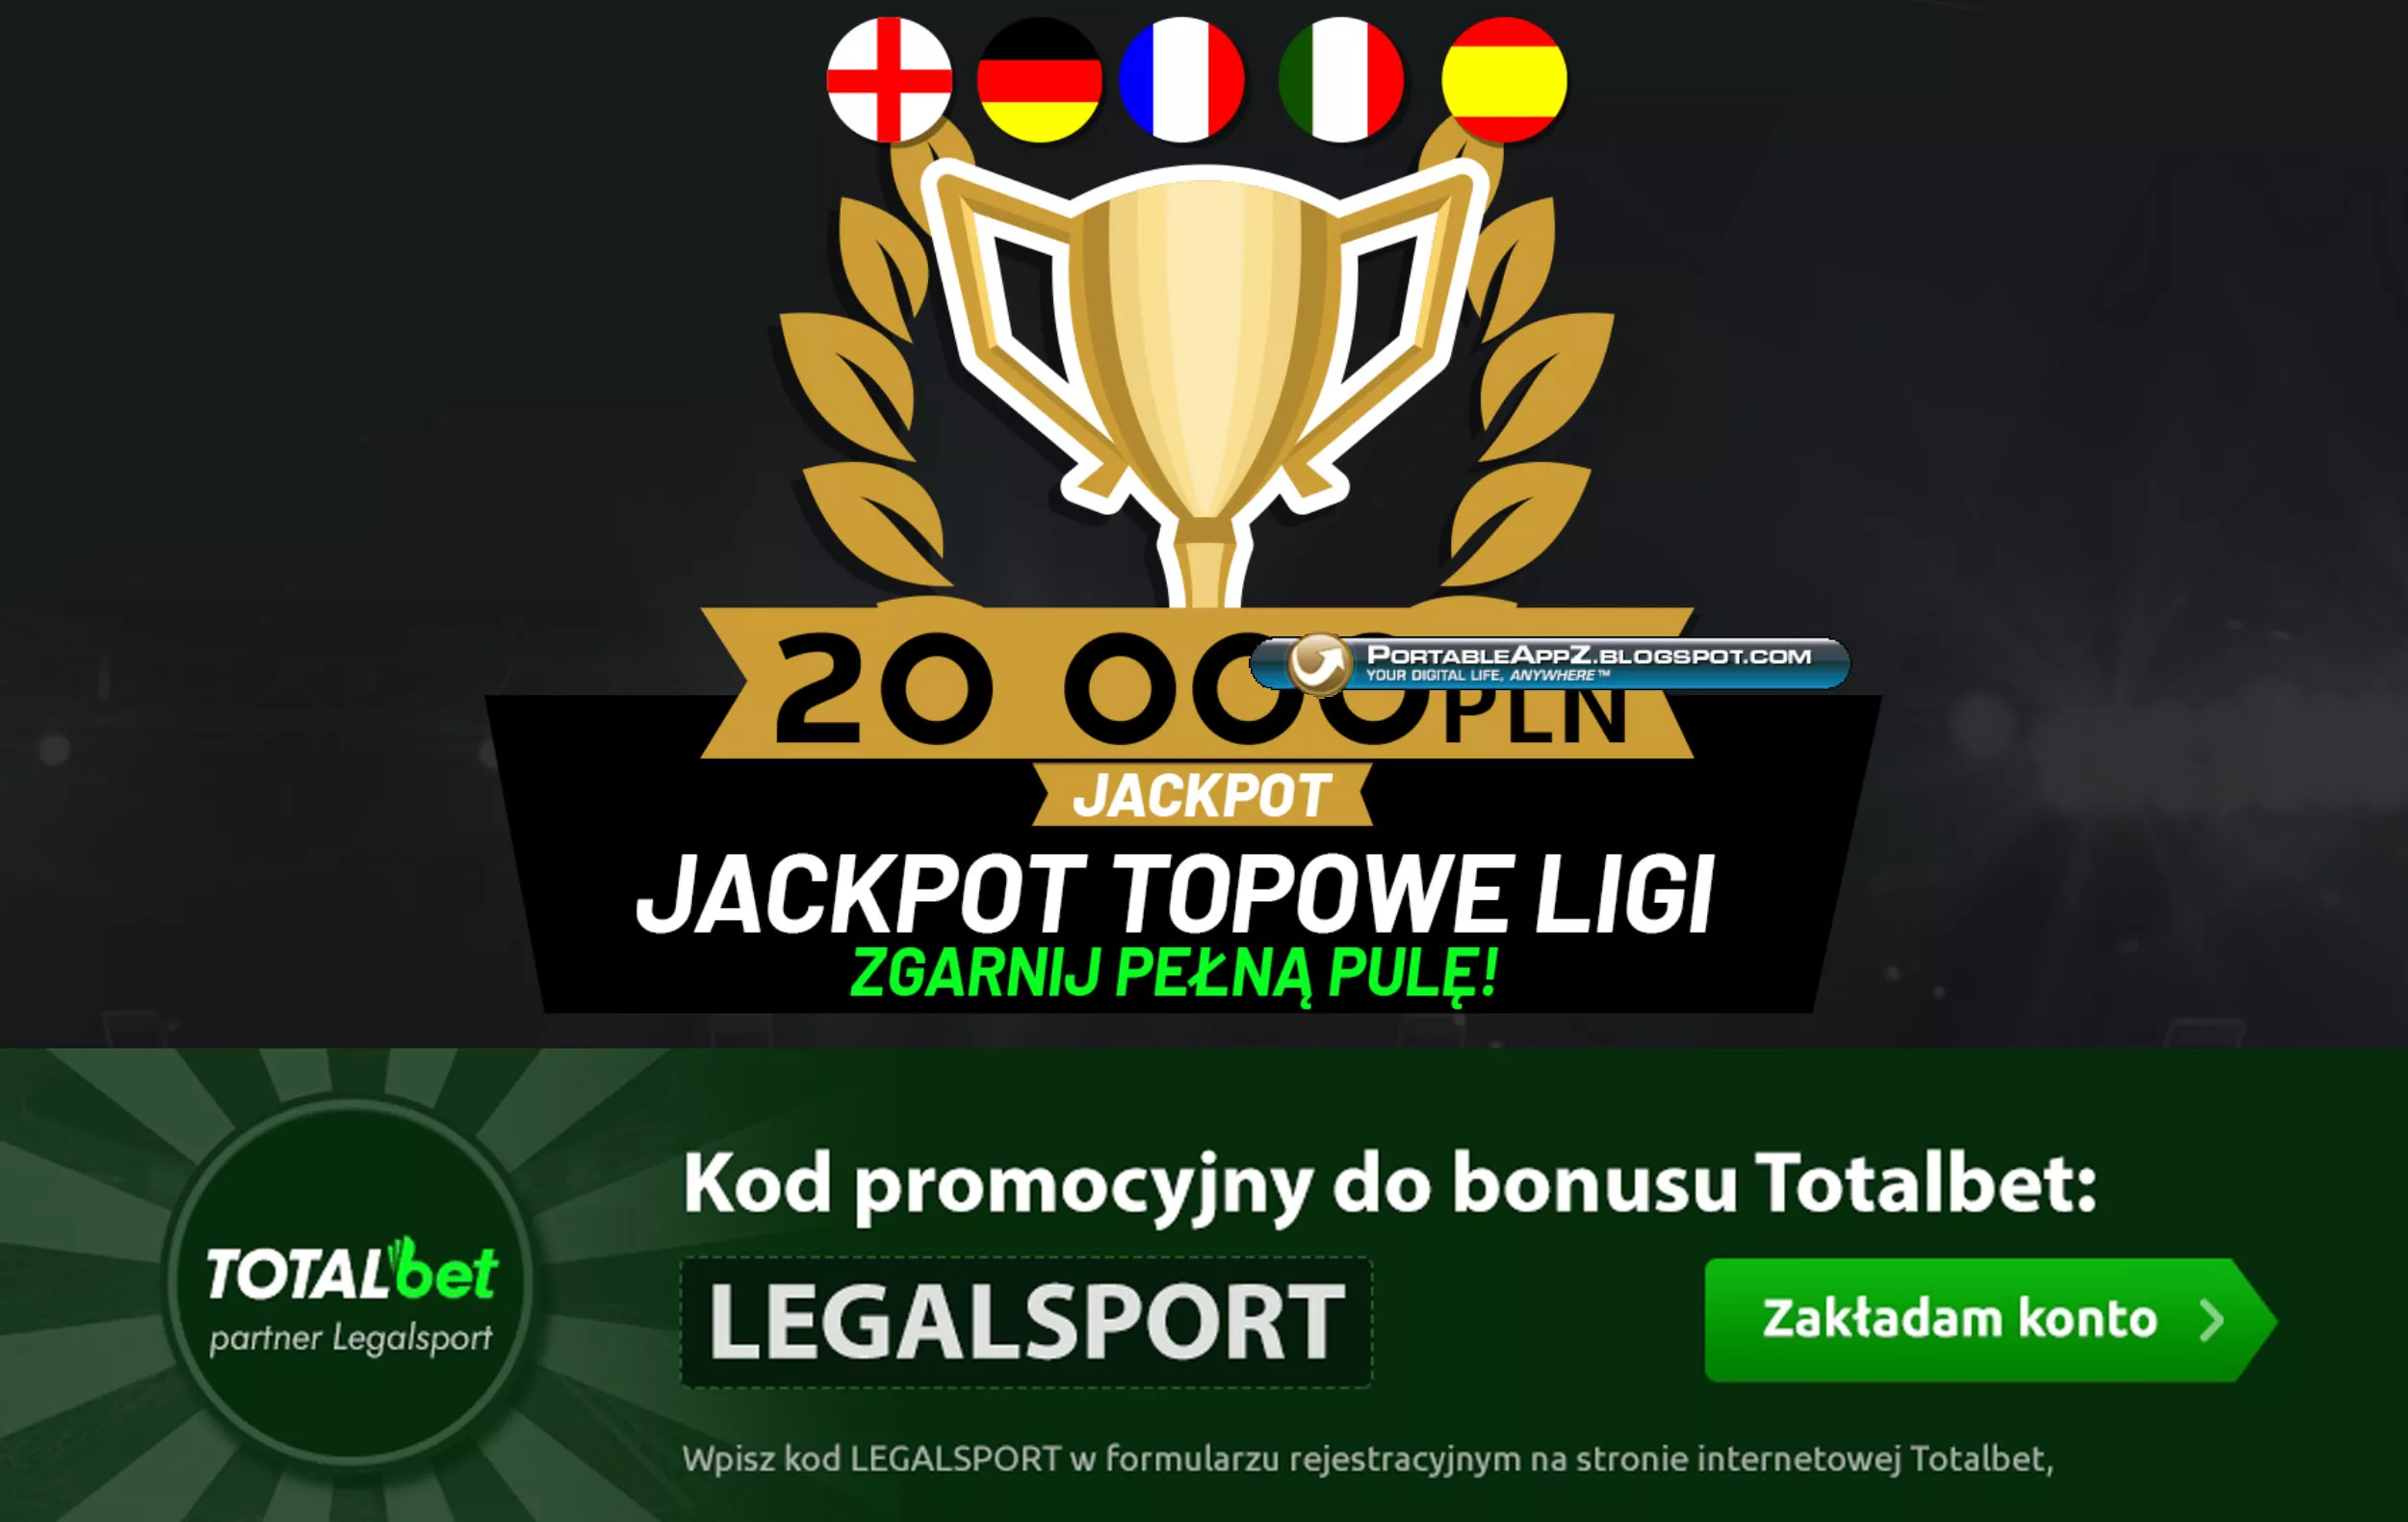 Topowe Ligi - Jackpot 20 000 zł u bukmachera